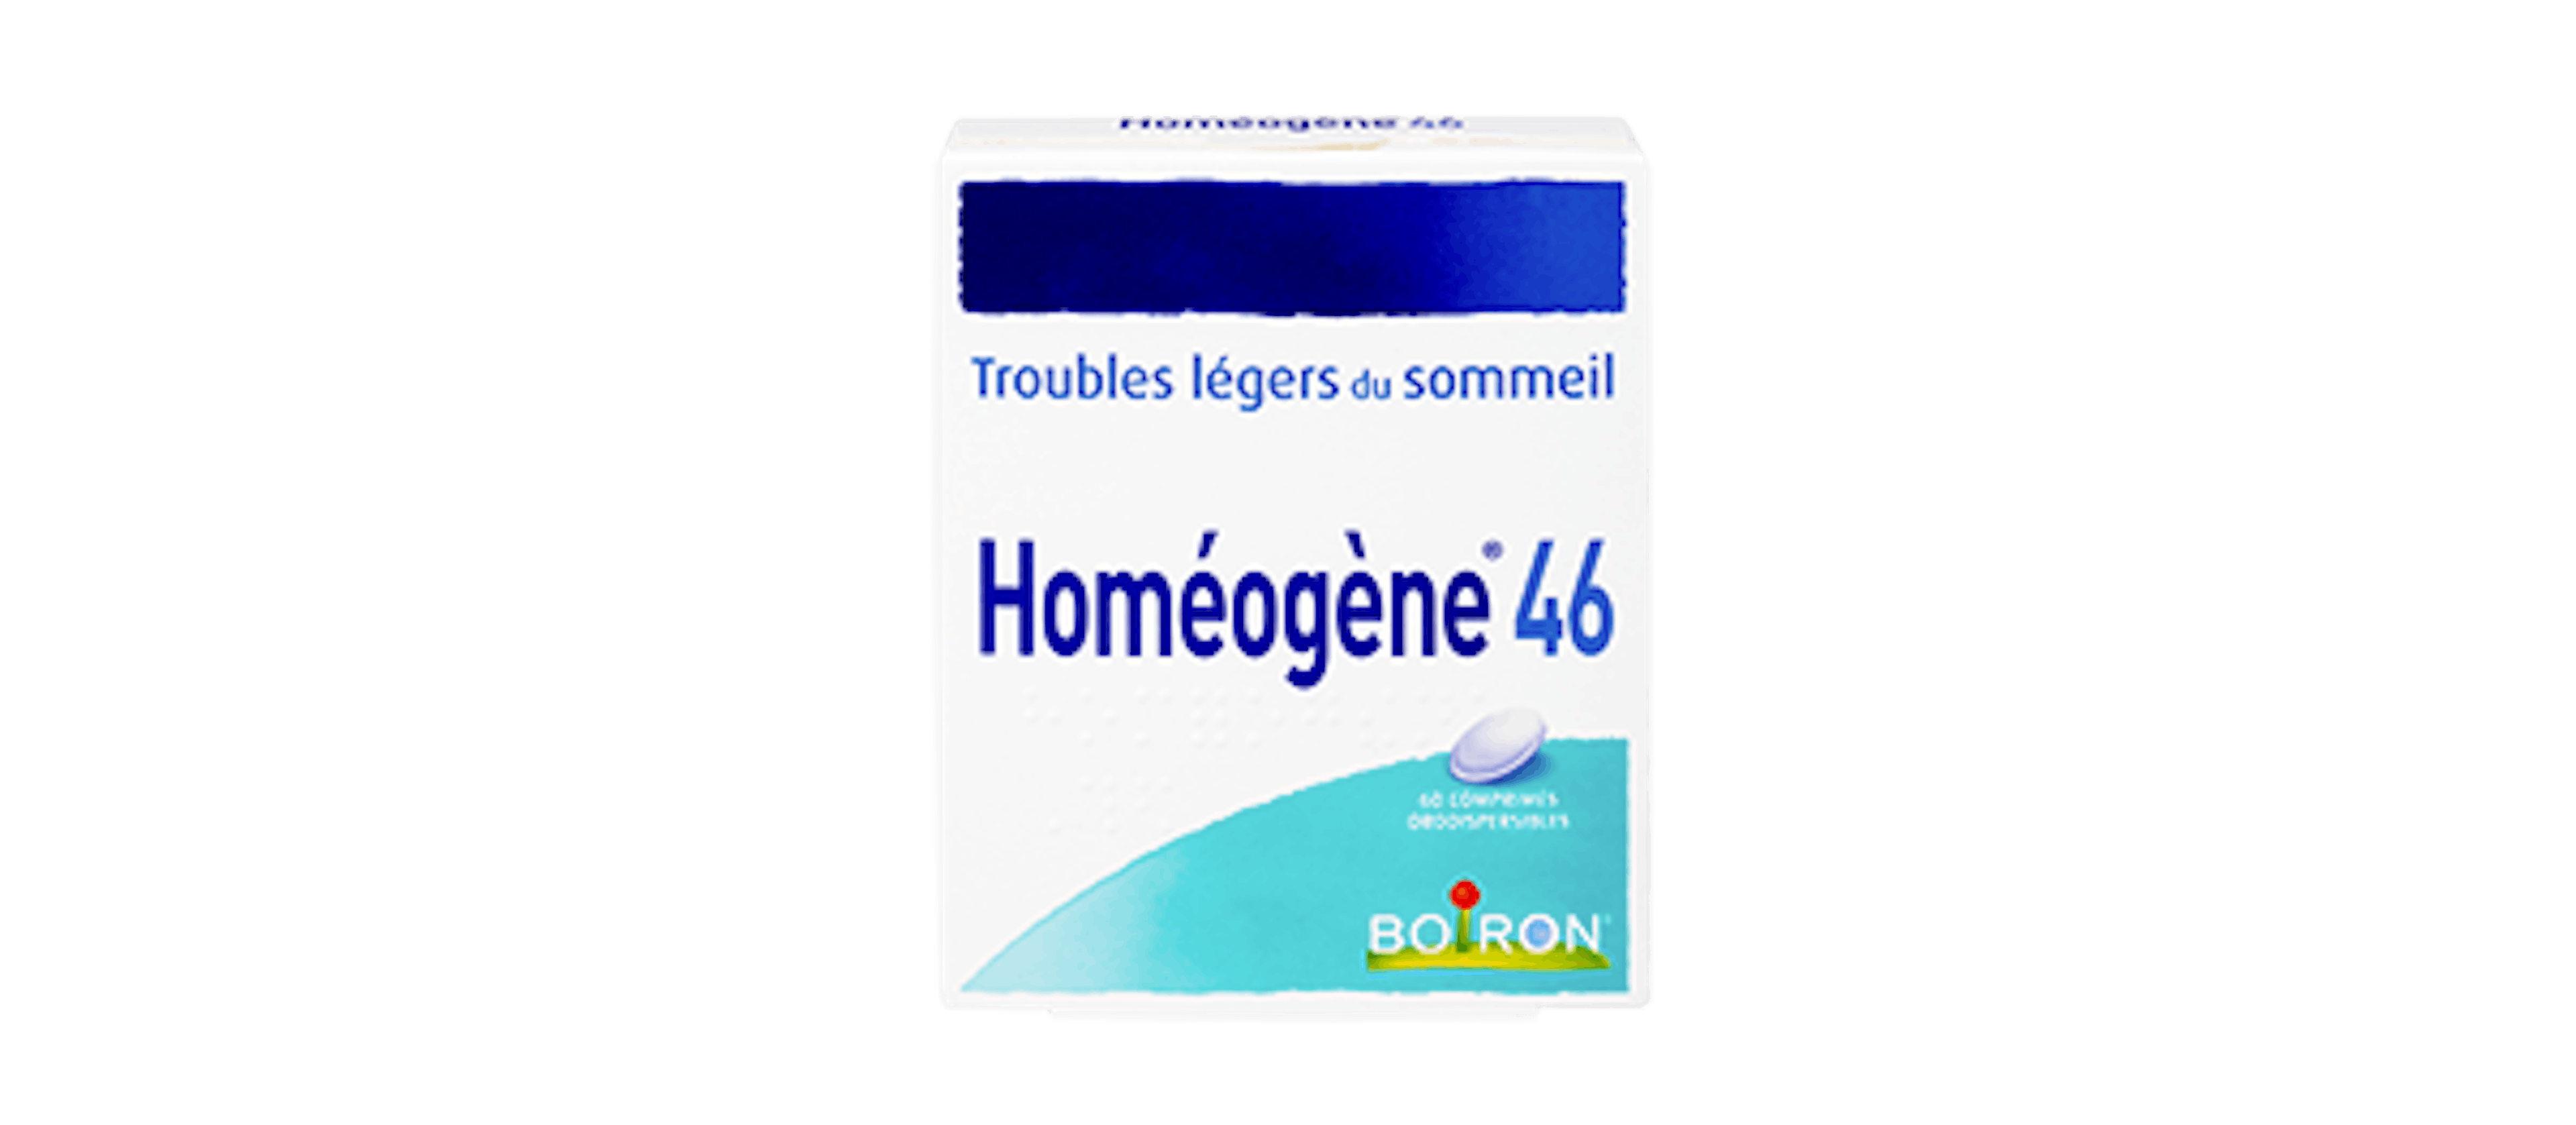 Homéopathie troubles légers du sommeil - Homéogène® 46 Boiron